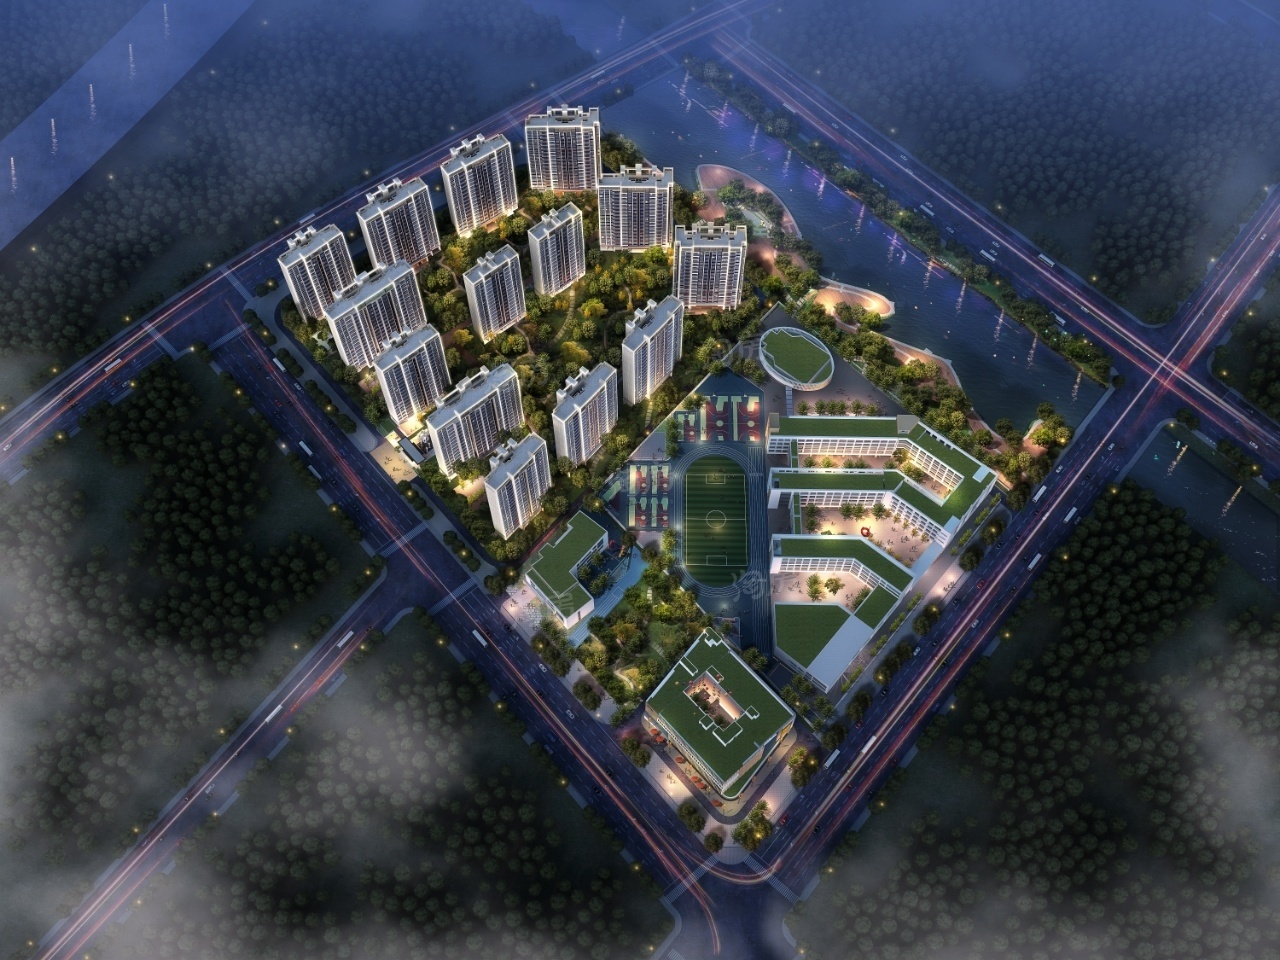 中国铁建未来城主力户型为77㎡-103㎡